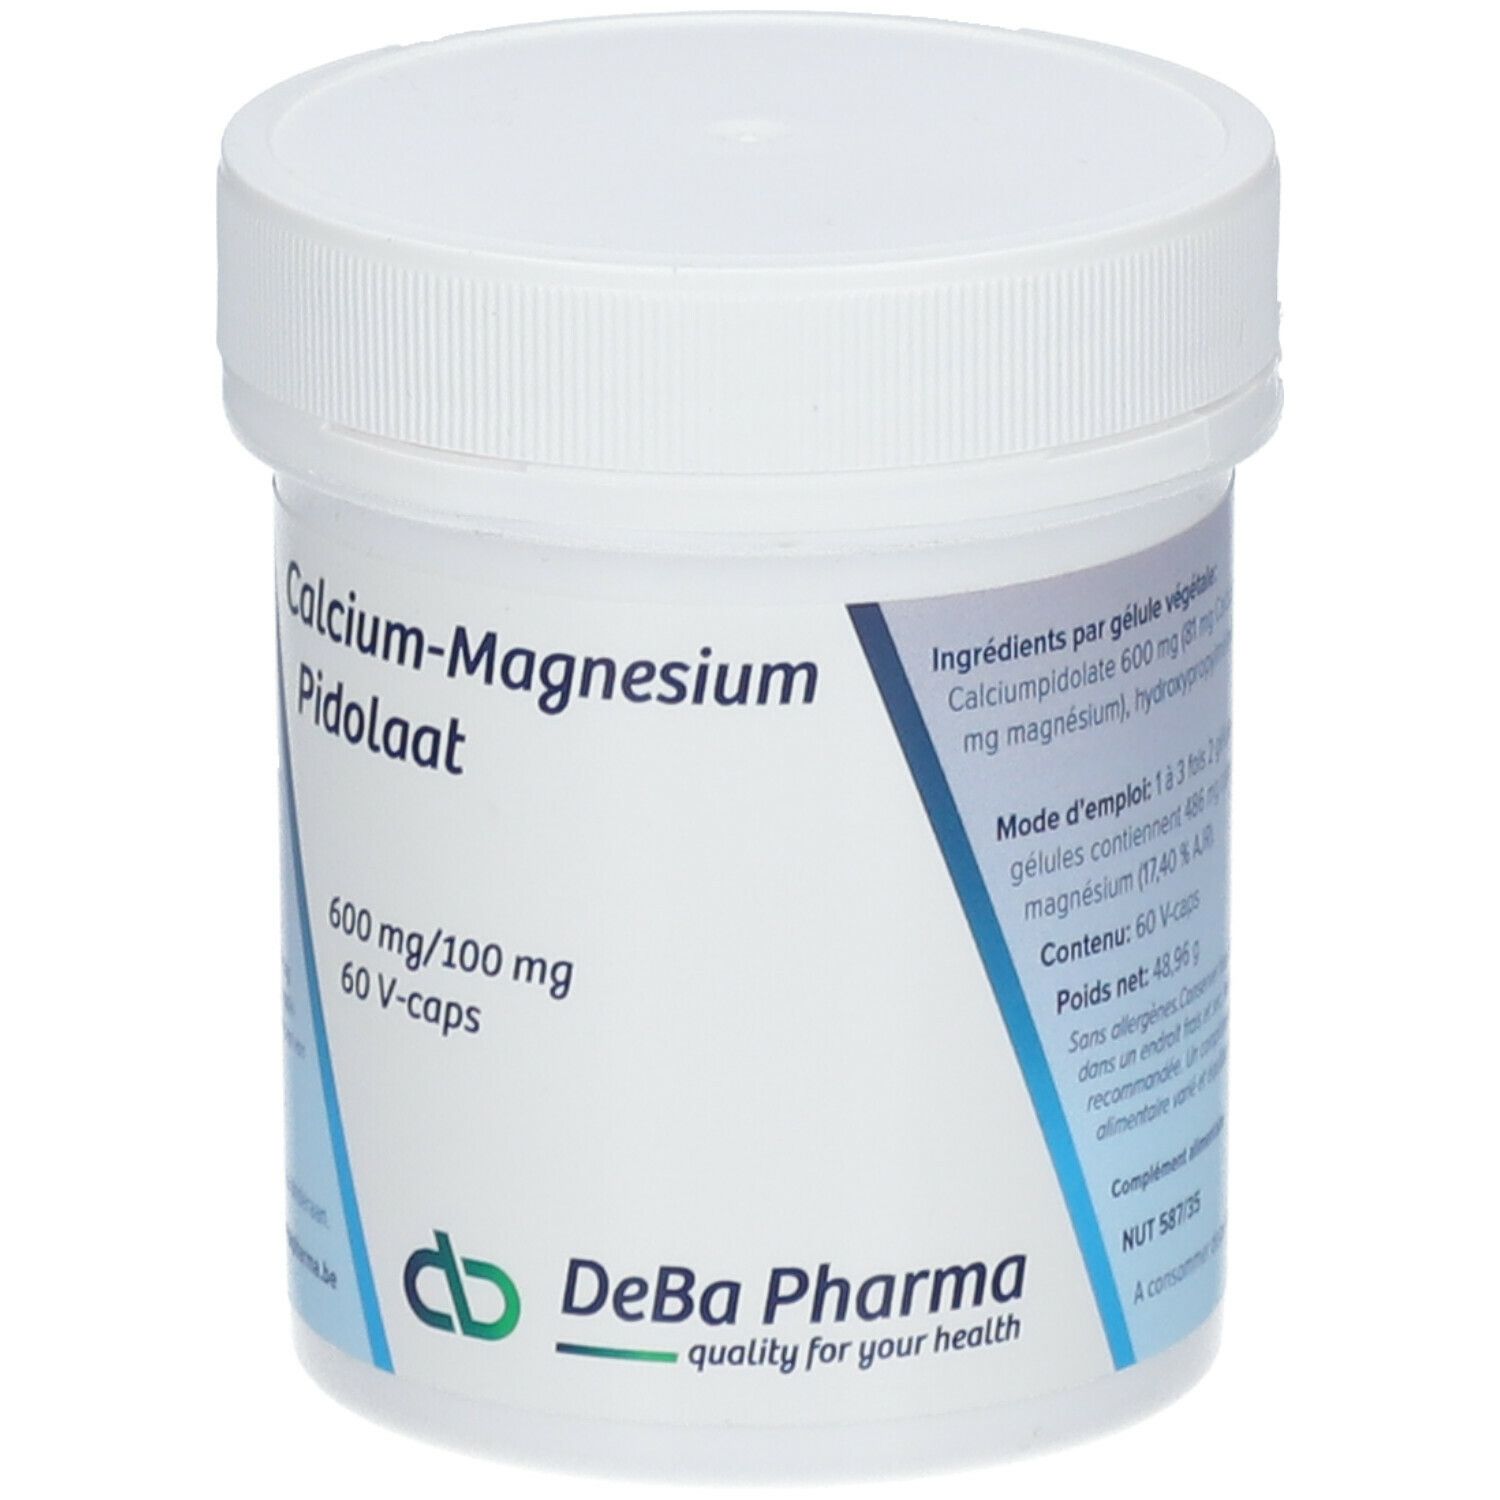 Deba Pharma Pidoate de calcium-magnesium